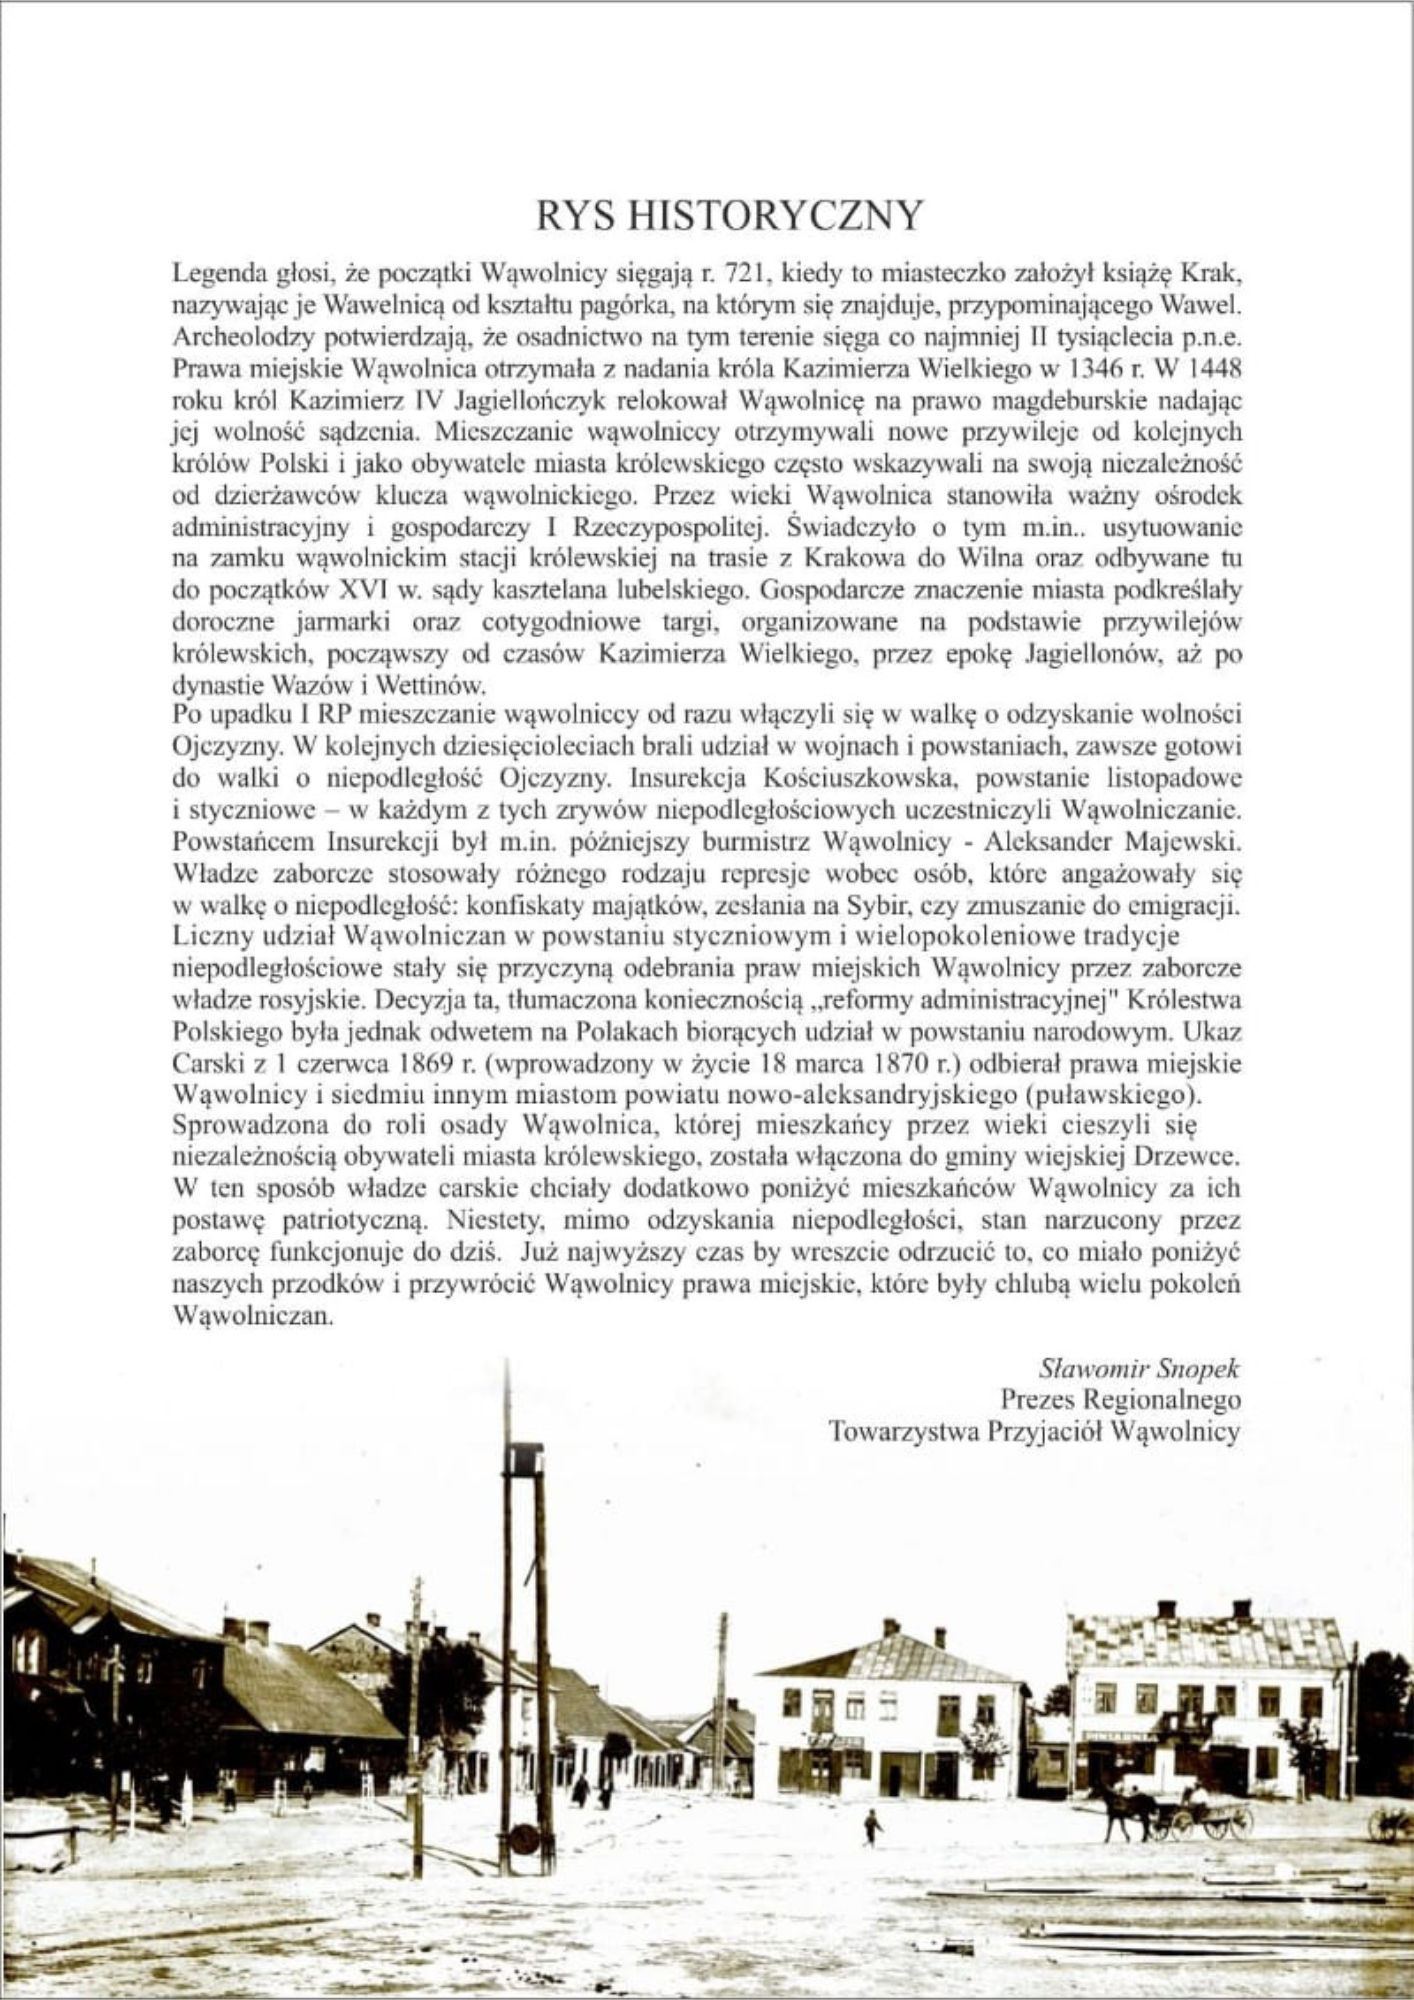 Obraz przedstawia stronę z książki lub dokumentu zawierającego długi tekst w języku polskim oraz mały czarno-biały plan miasta u dołu strony. Tekst opisuje kontekst historyczny i jest pogrupowany w akapity.